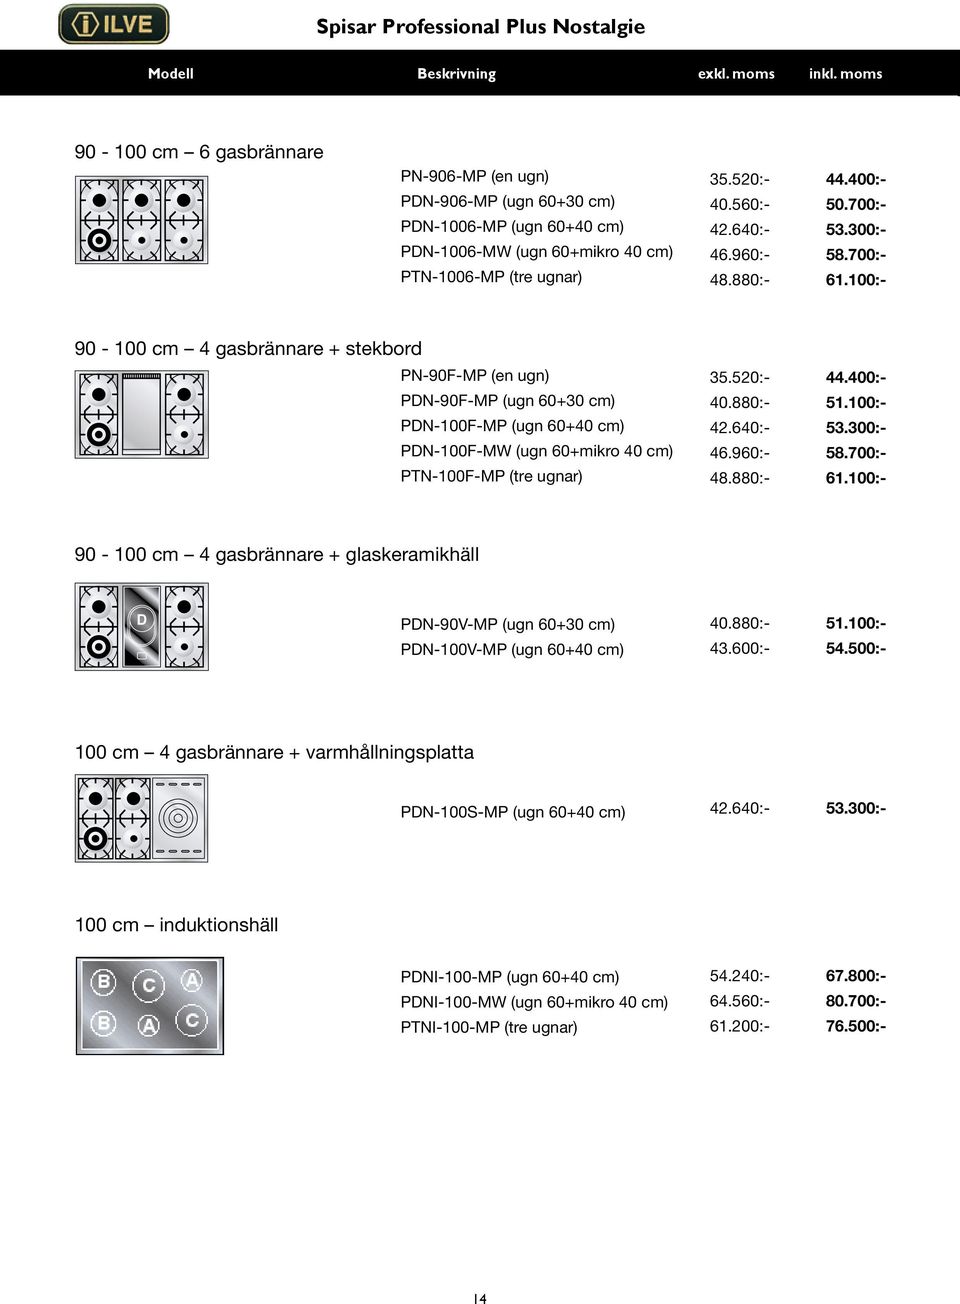 100:- 90-100 cm 4 gasbrännare + stekbord PN-90F-MP (en ugn) PDN-90F-MP (ugn 60+30 cm) PDN-100F-MP (ugn 60+40 cm) PDN-100F-MW (ugn 60+mikro 40 cm) PTN-100F-MP (tre ugnar) 35.520:- 44.400:- 40.880:- 51.